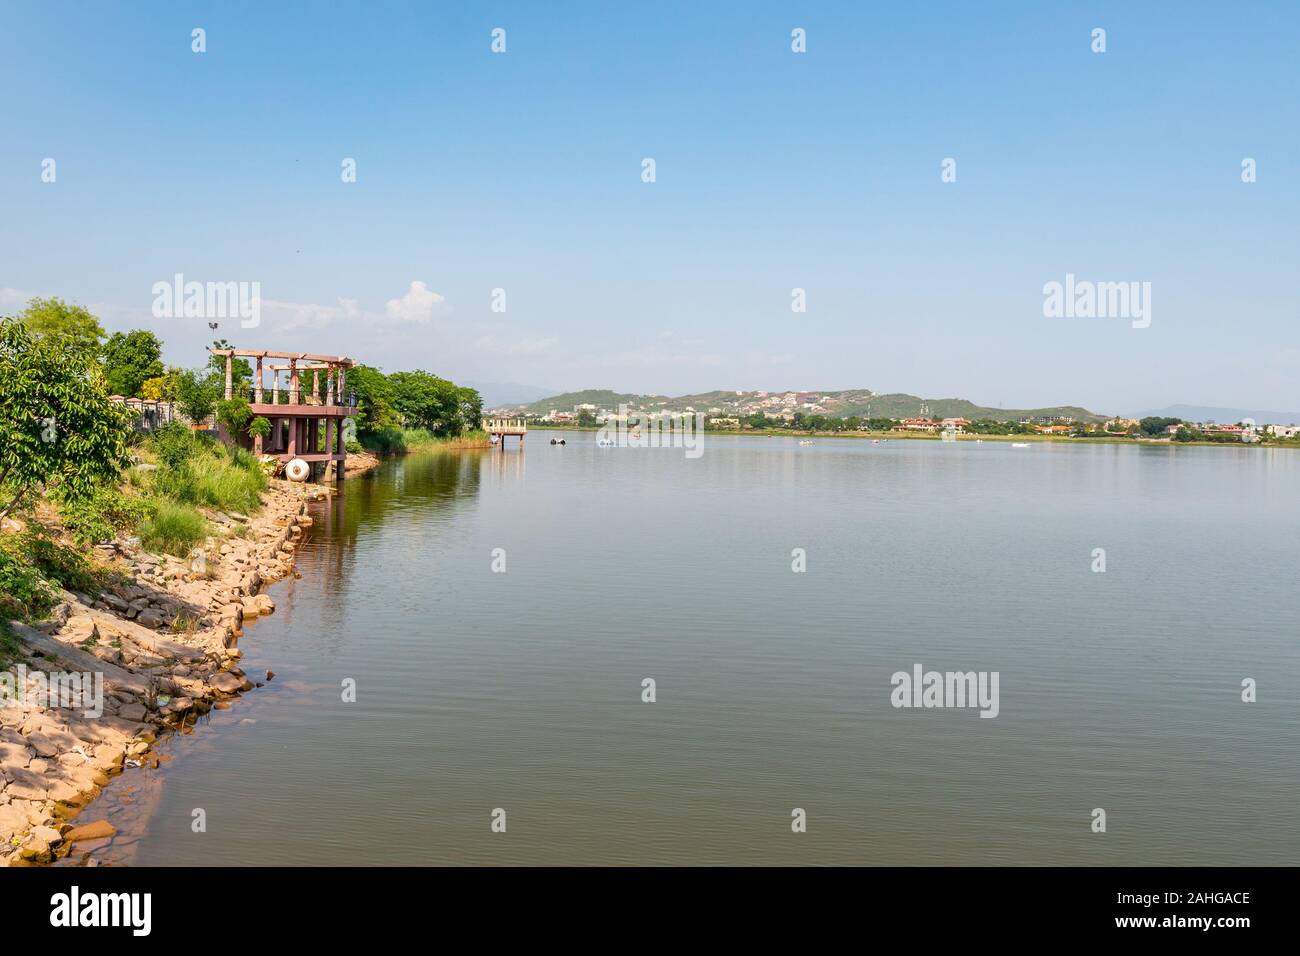 Islamabad, vue sur le lac pittoresque parc vue à couper le souffle de la rive sur un ciel bleu ensoleillé Jour Banque D'Images